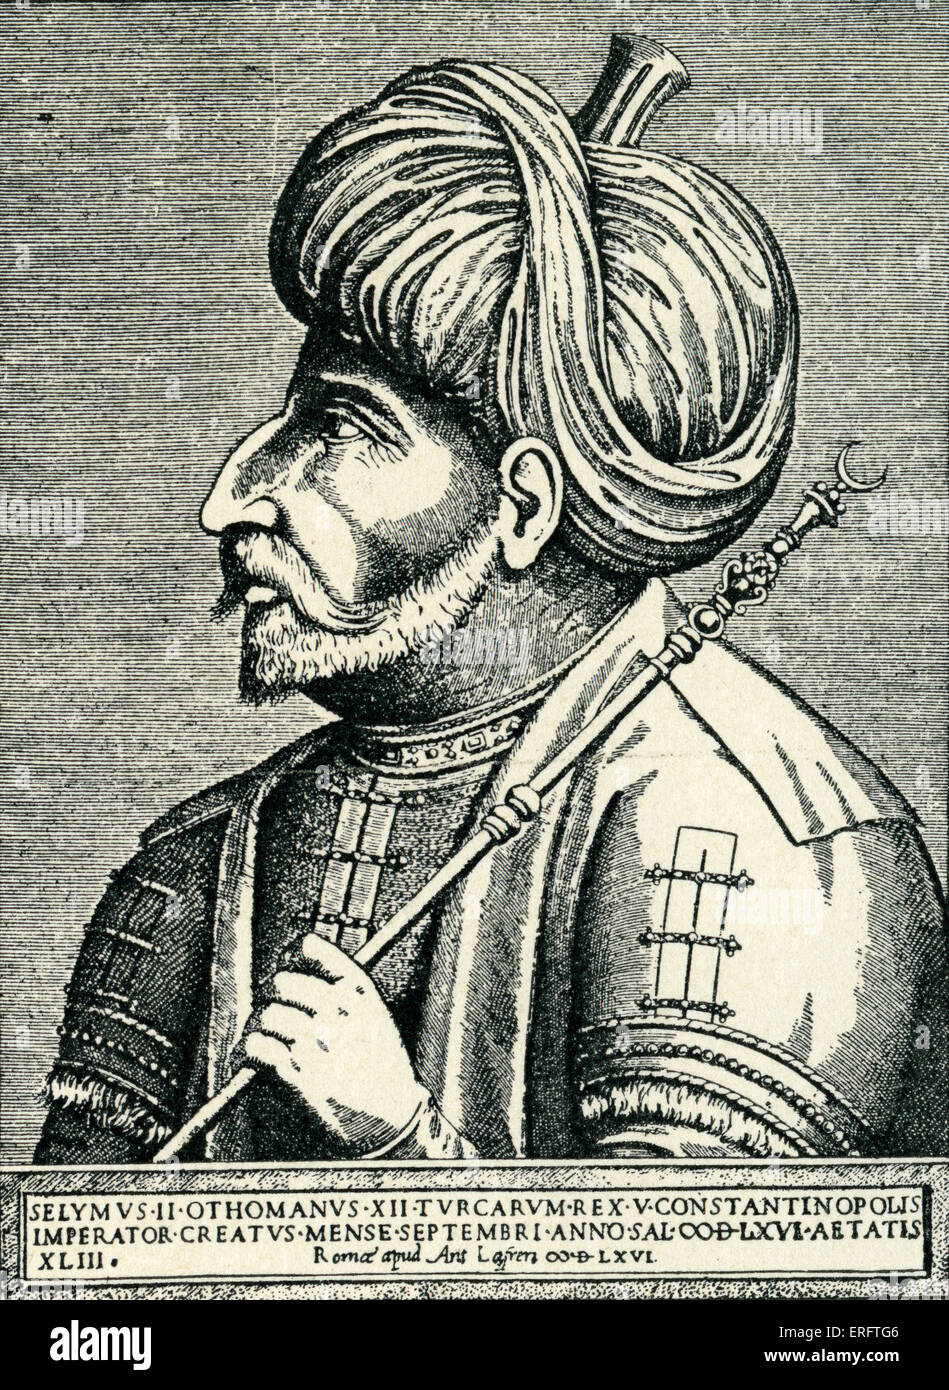 Sultan Selim II - Kupferstich von Antonio Lafreri. Original in der Bibliothèque Nationale Paris gehalten.  Regierungszeit: 1524-1574 Stockfoto